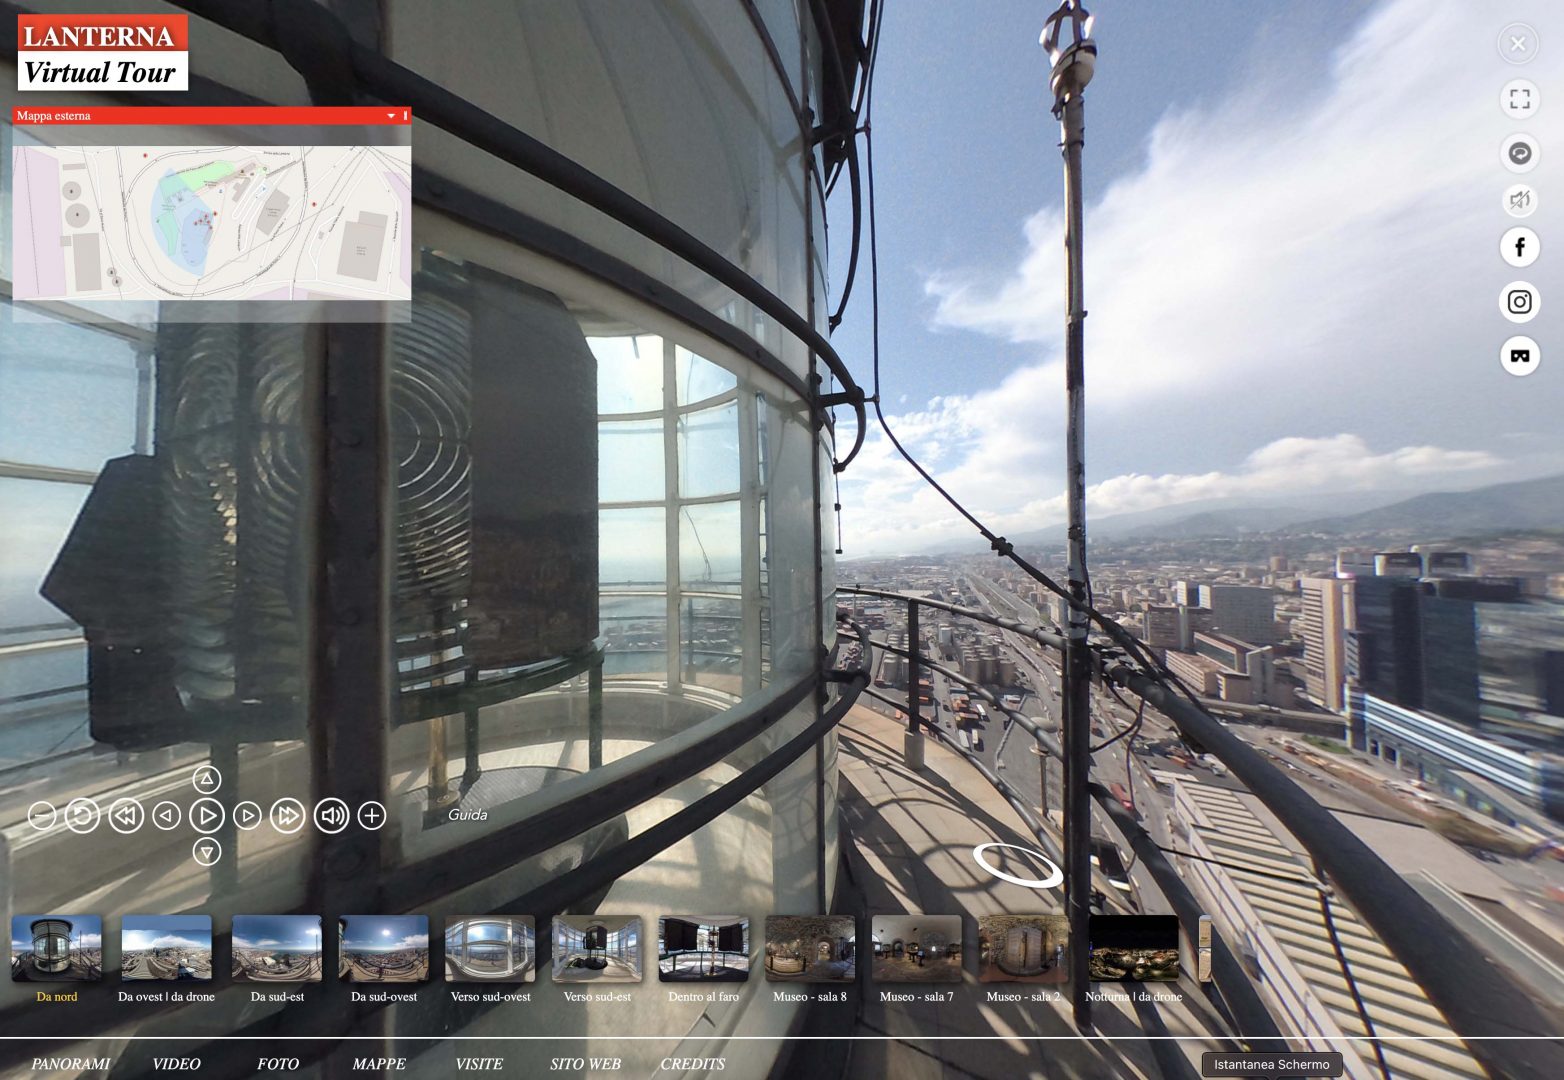 Immagini 360: Tour virtuale aereo Lanterna di Genova